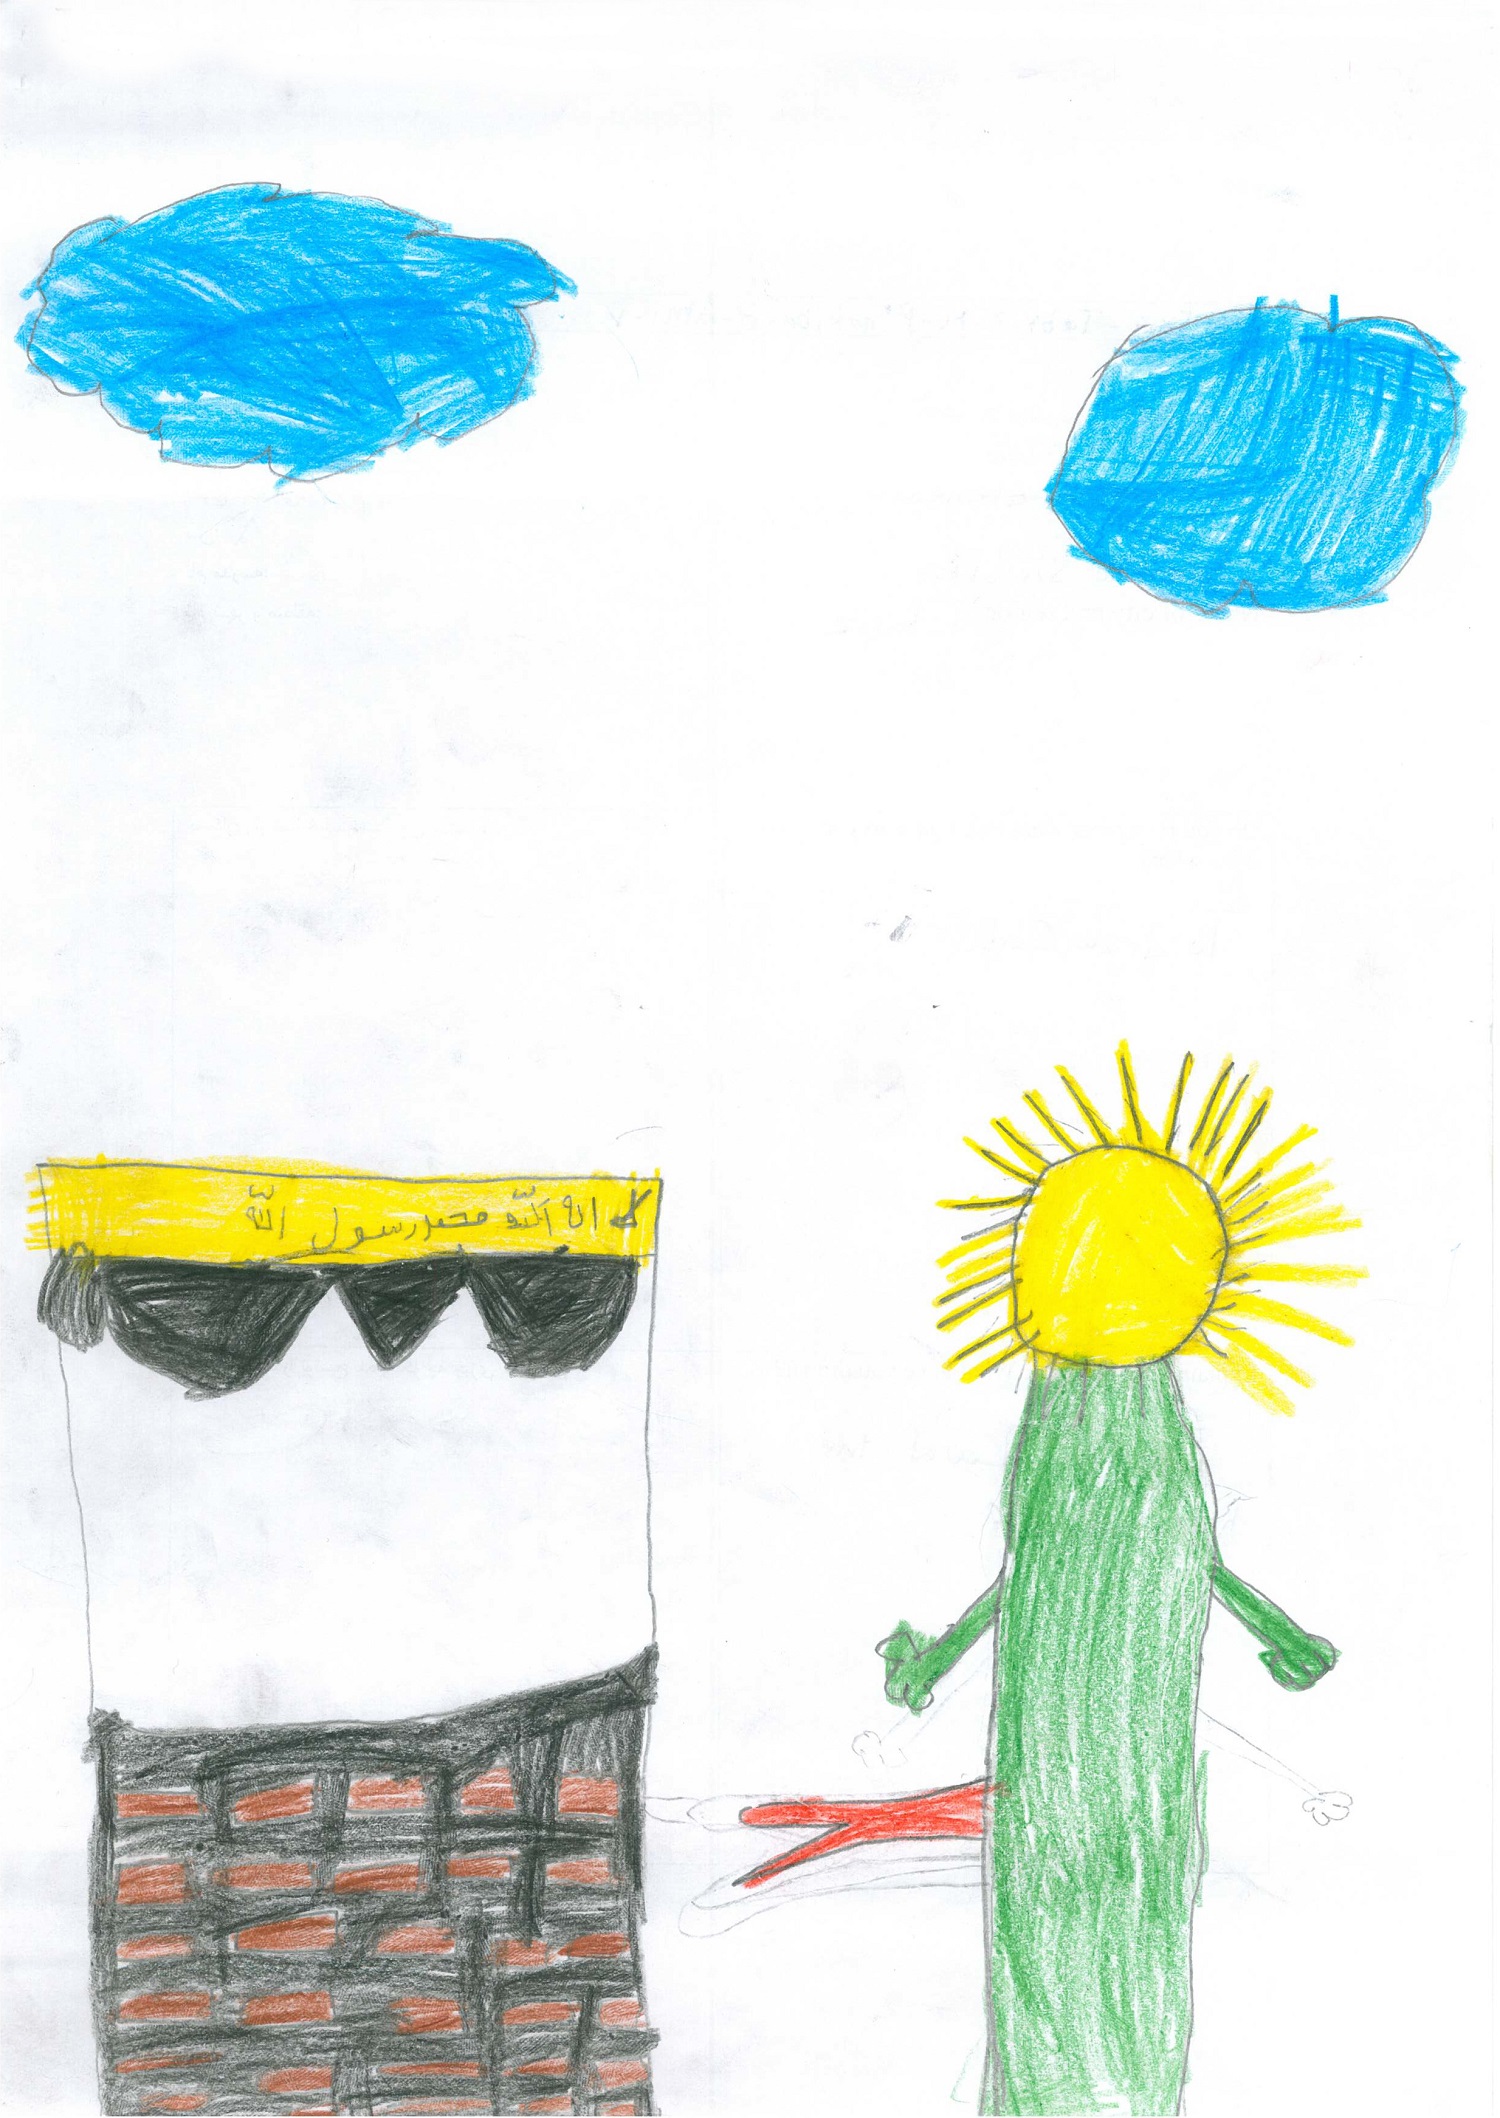 La Kaaba. Leyenda del niño: “Dibujé la casa de Dios y Dios mismo”